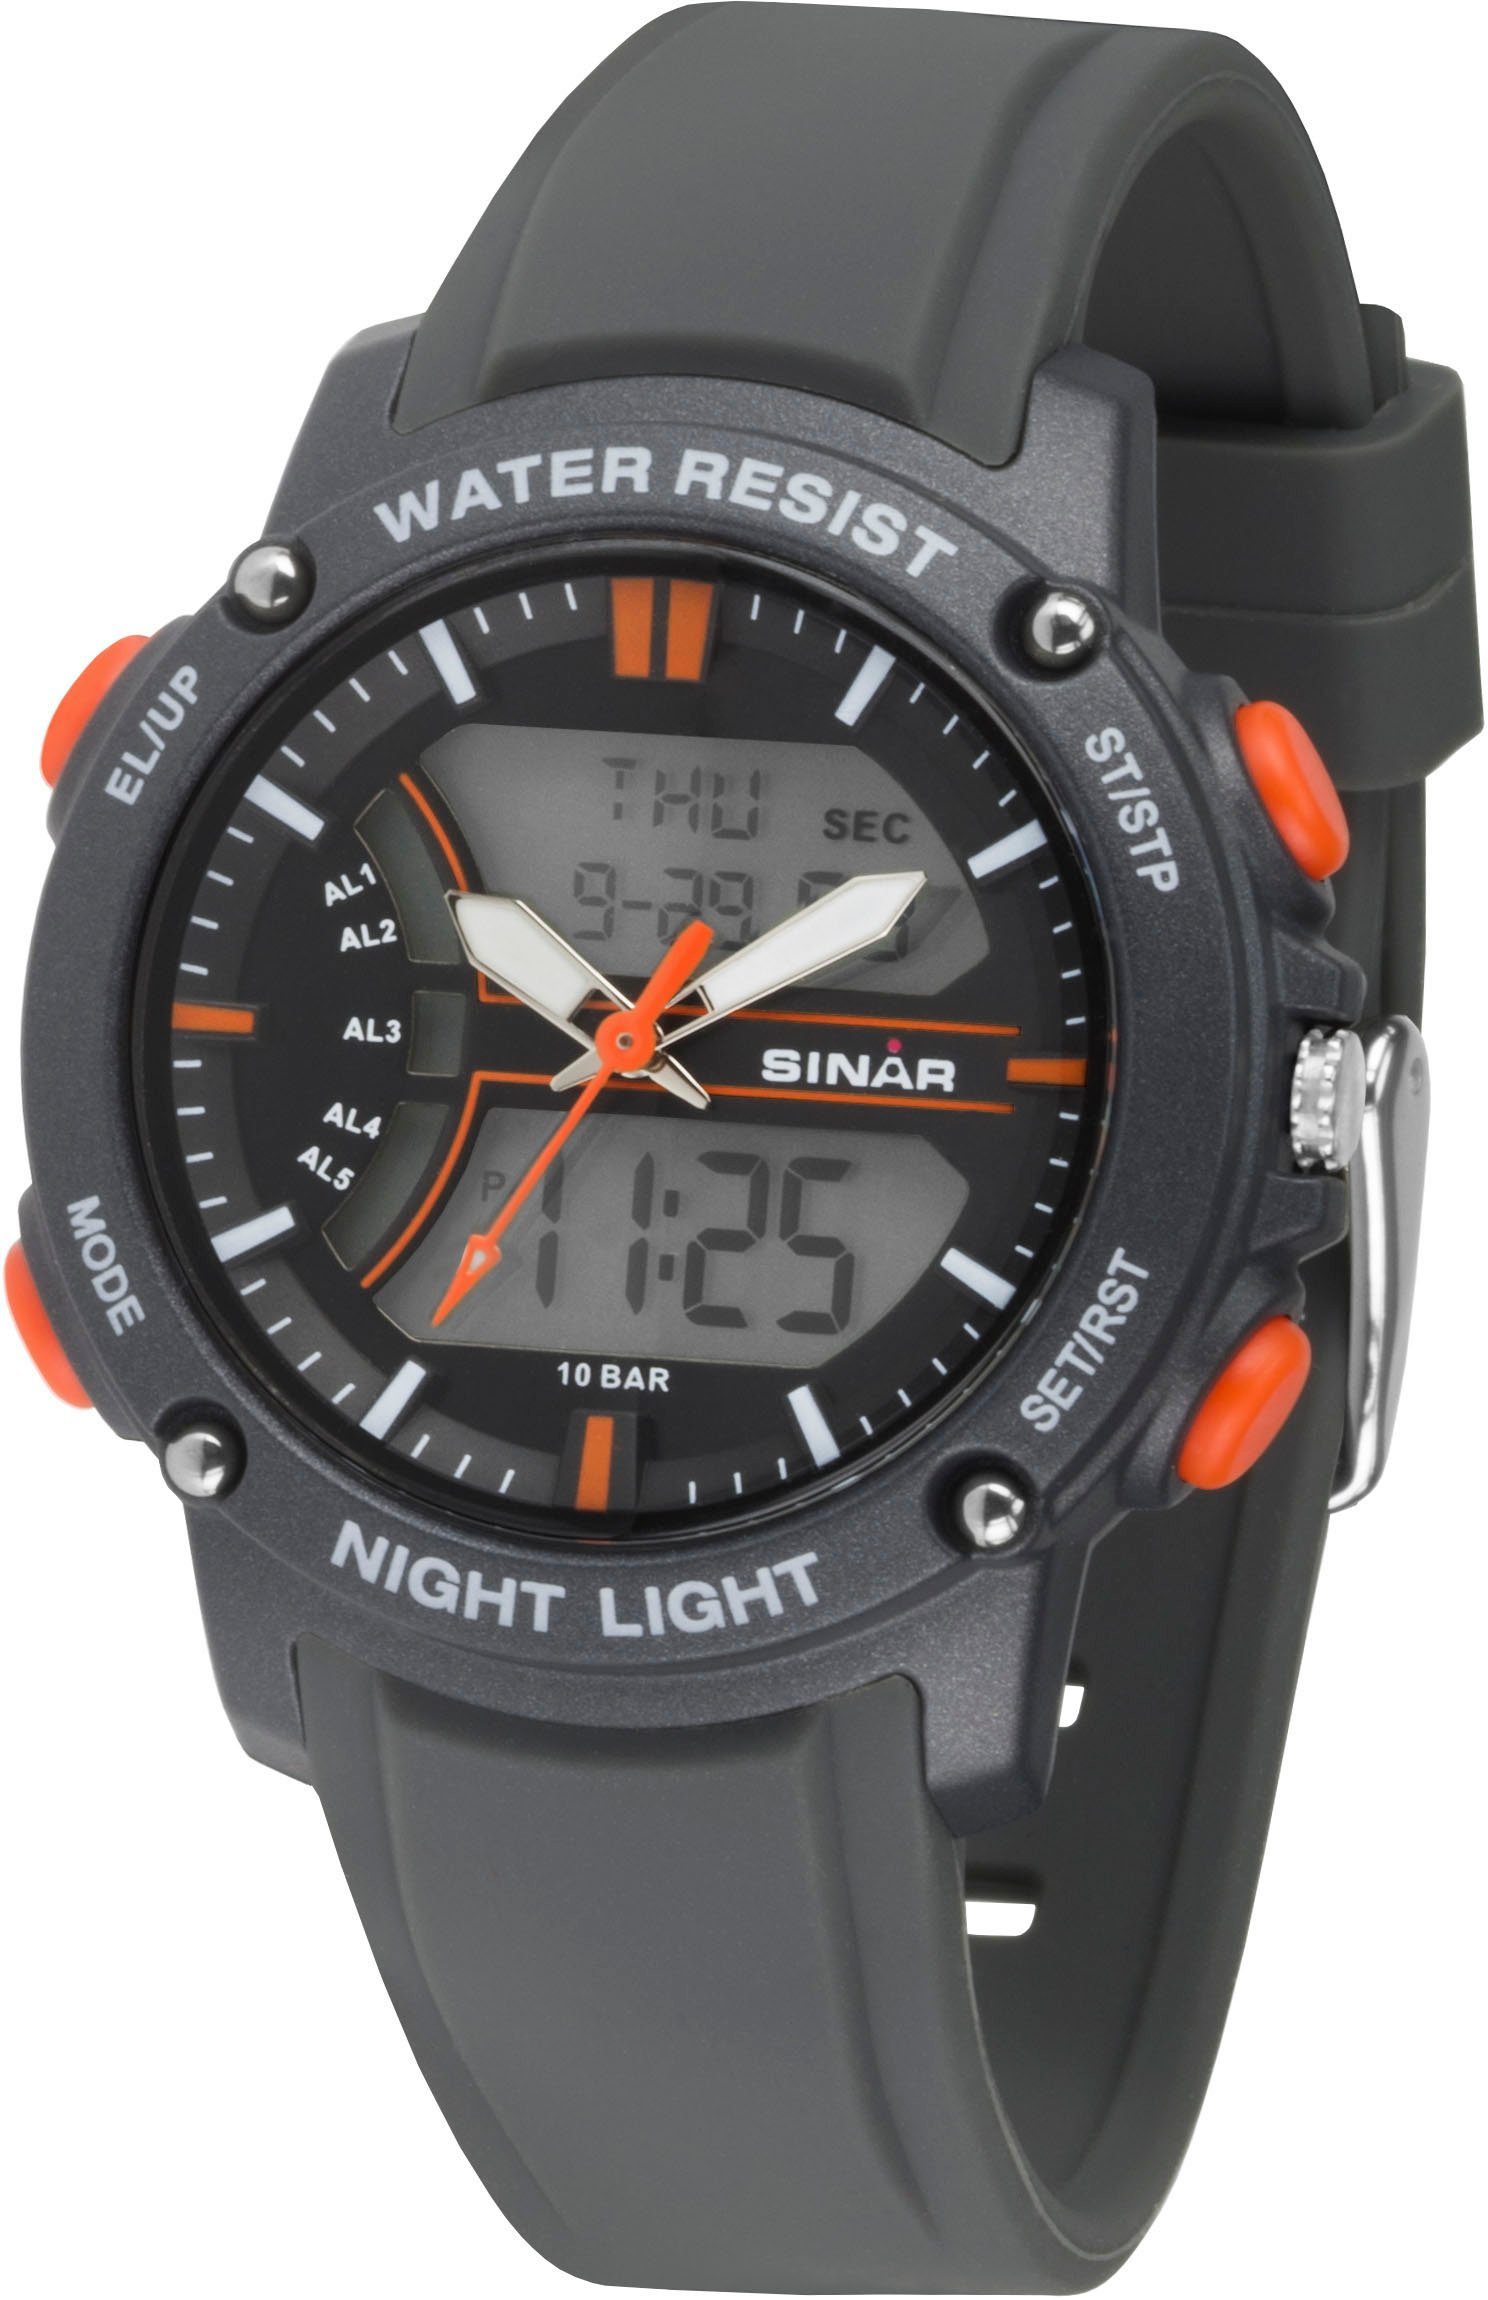 SINAR Quarzuhr XW-27-9, Armbanduhr, Herrenuhr, analaog, digital, Datum